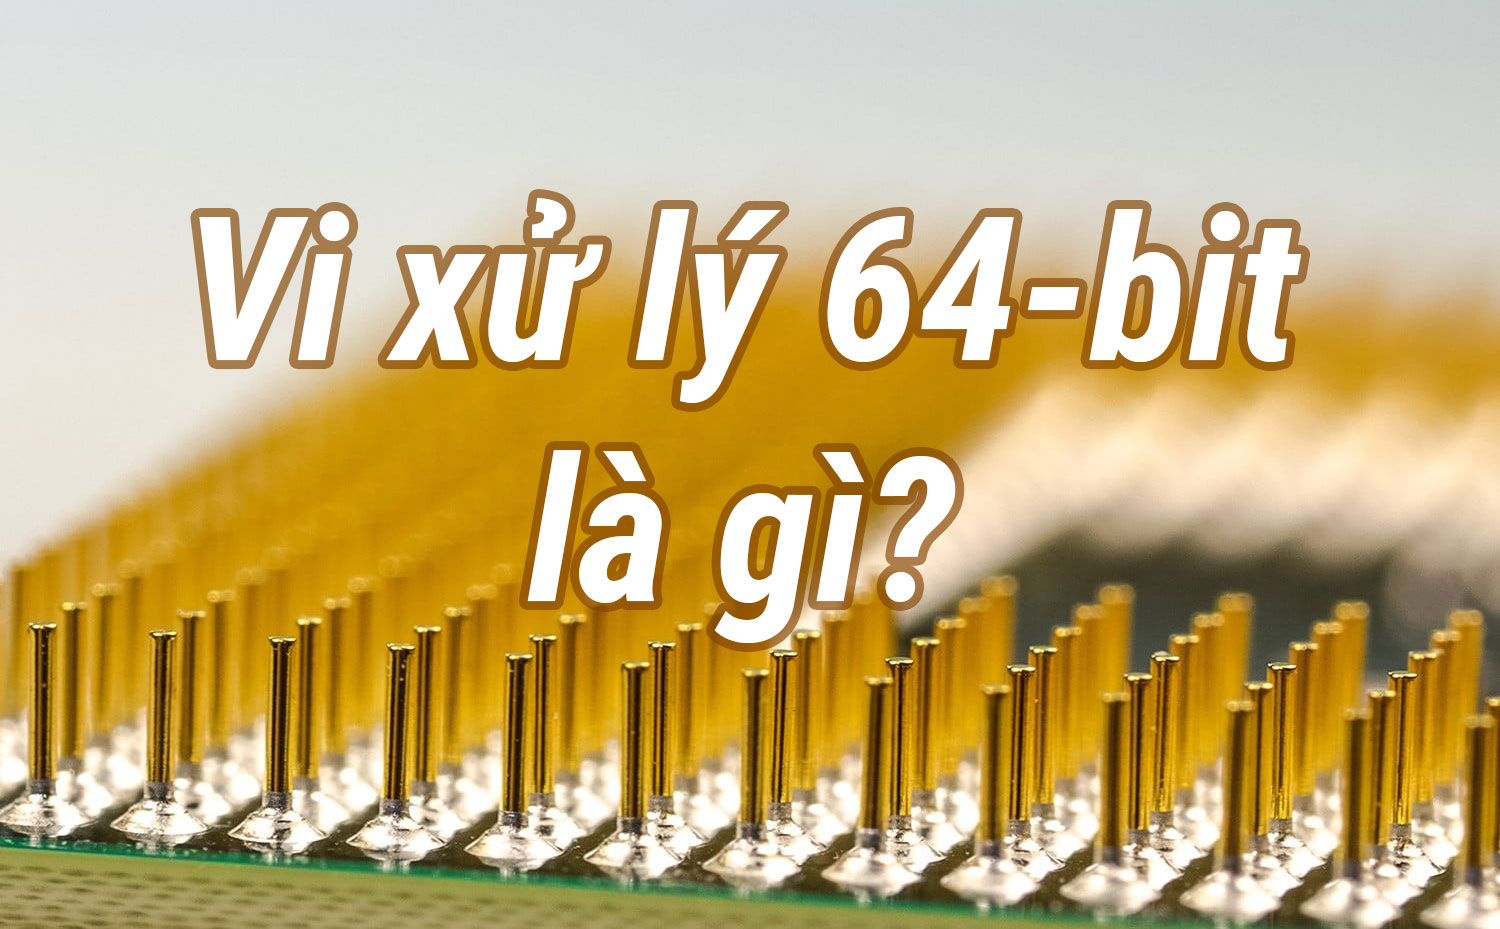 64-bit là gì? Tìm hiểu về hệ thống, ưu nhược điểm và cách kiểm tra